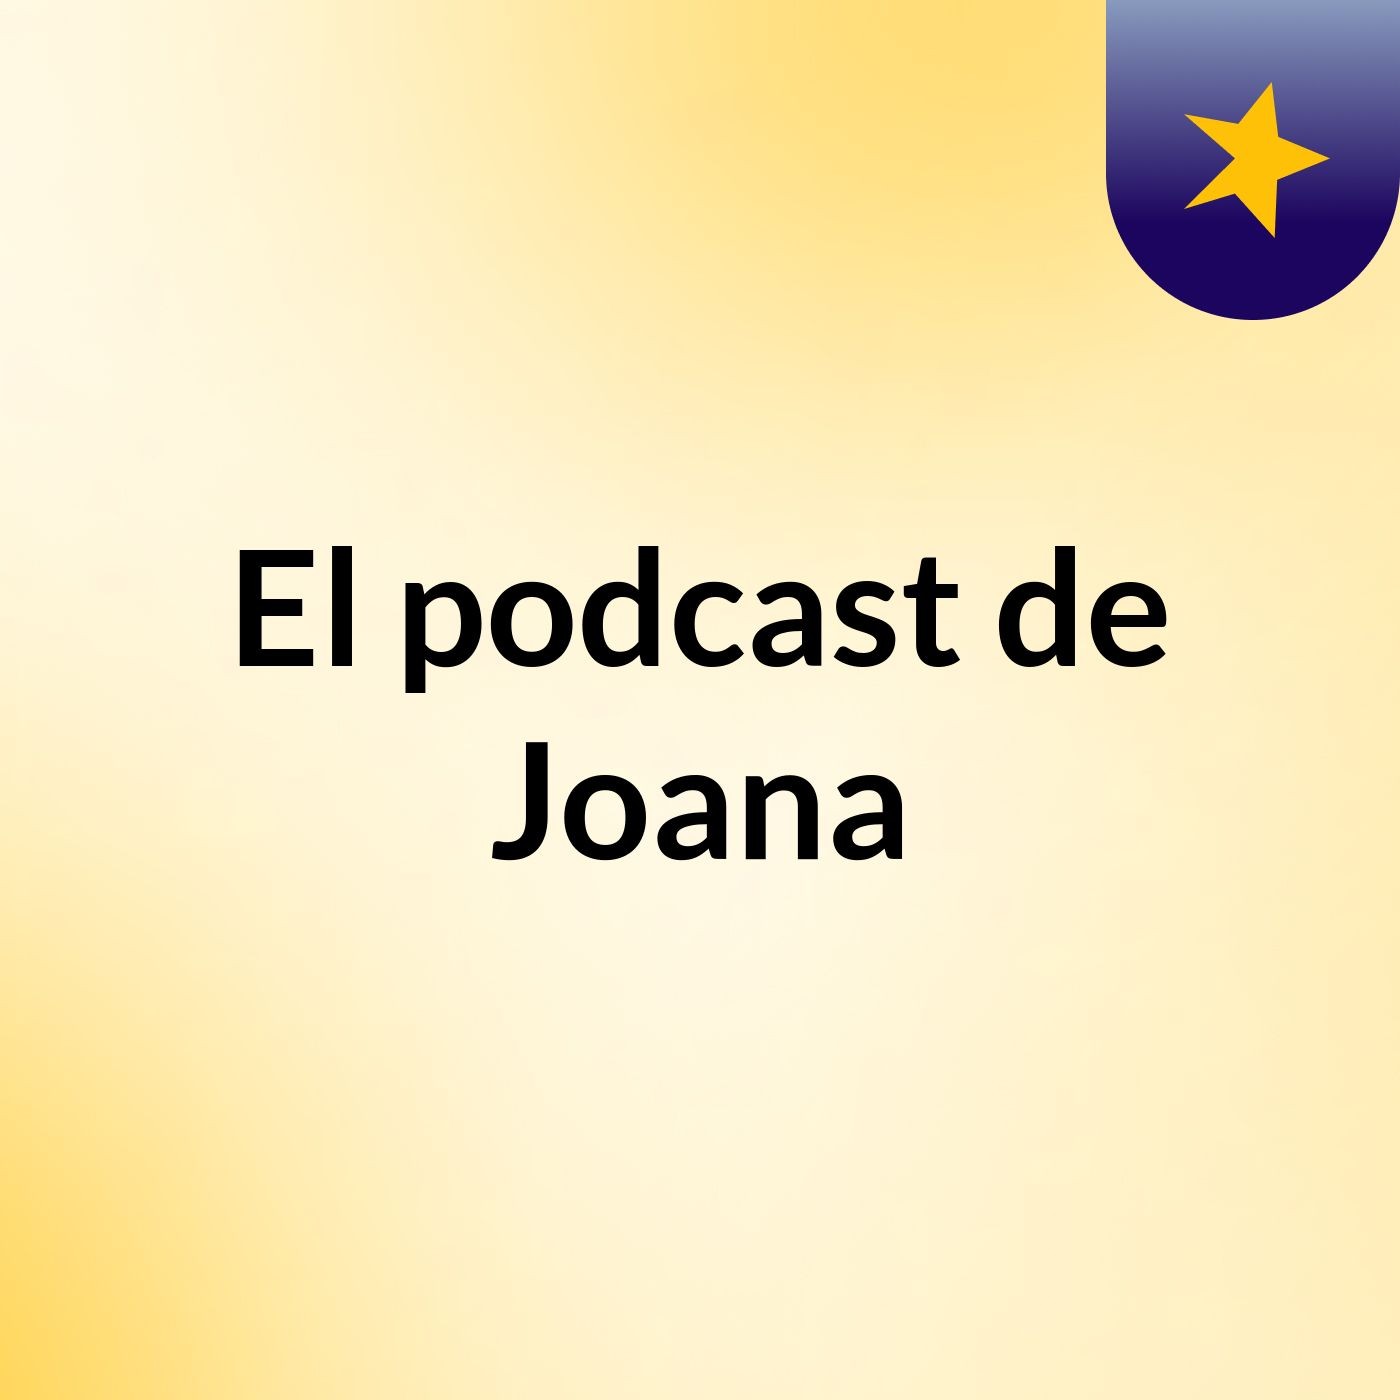 El podcast de Joana